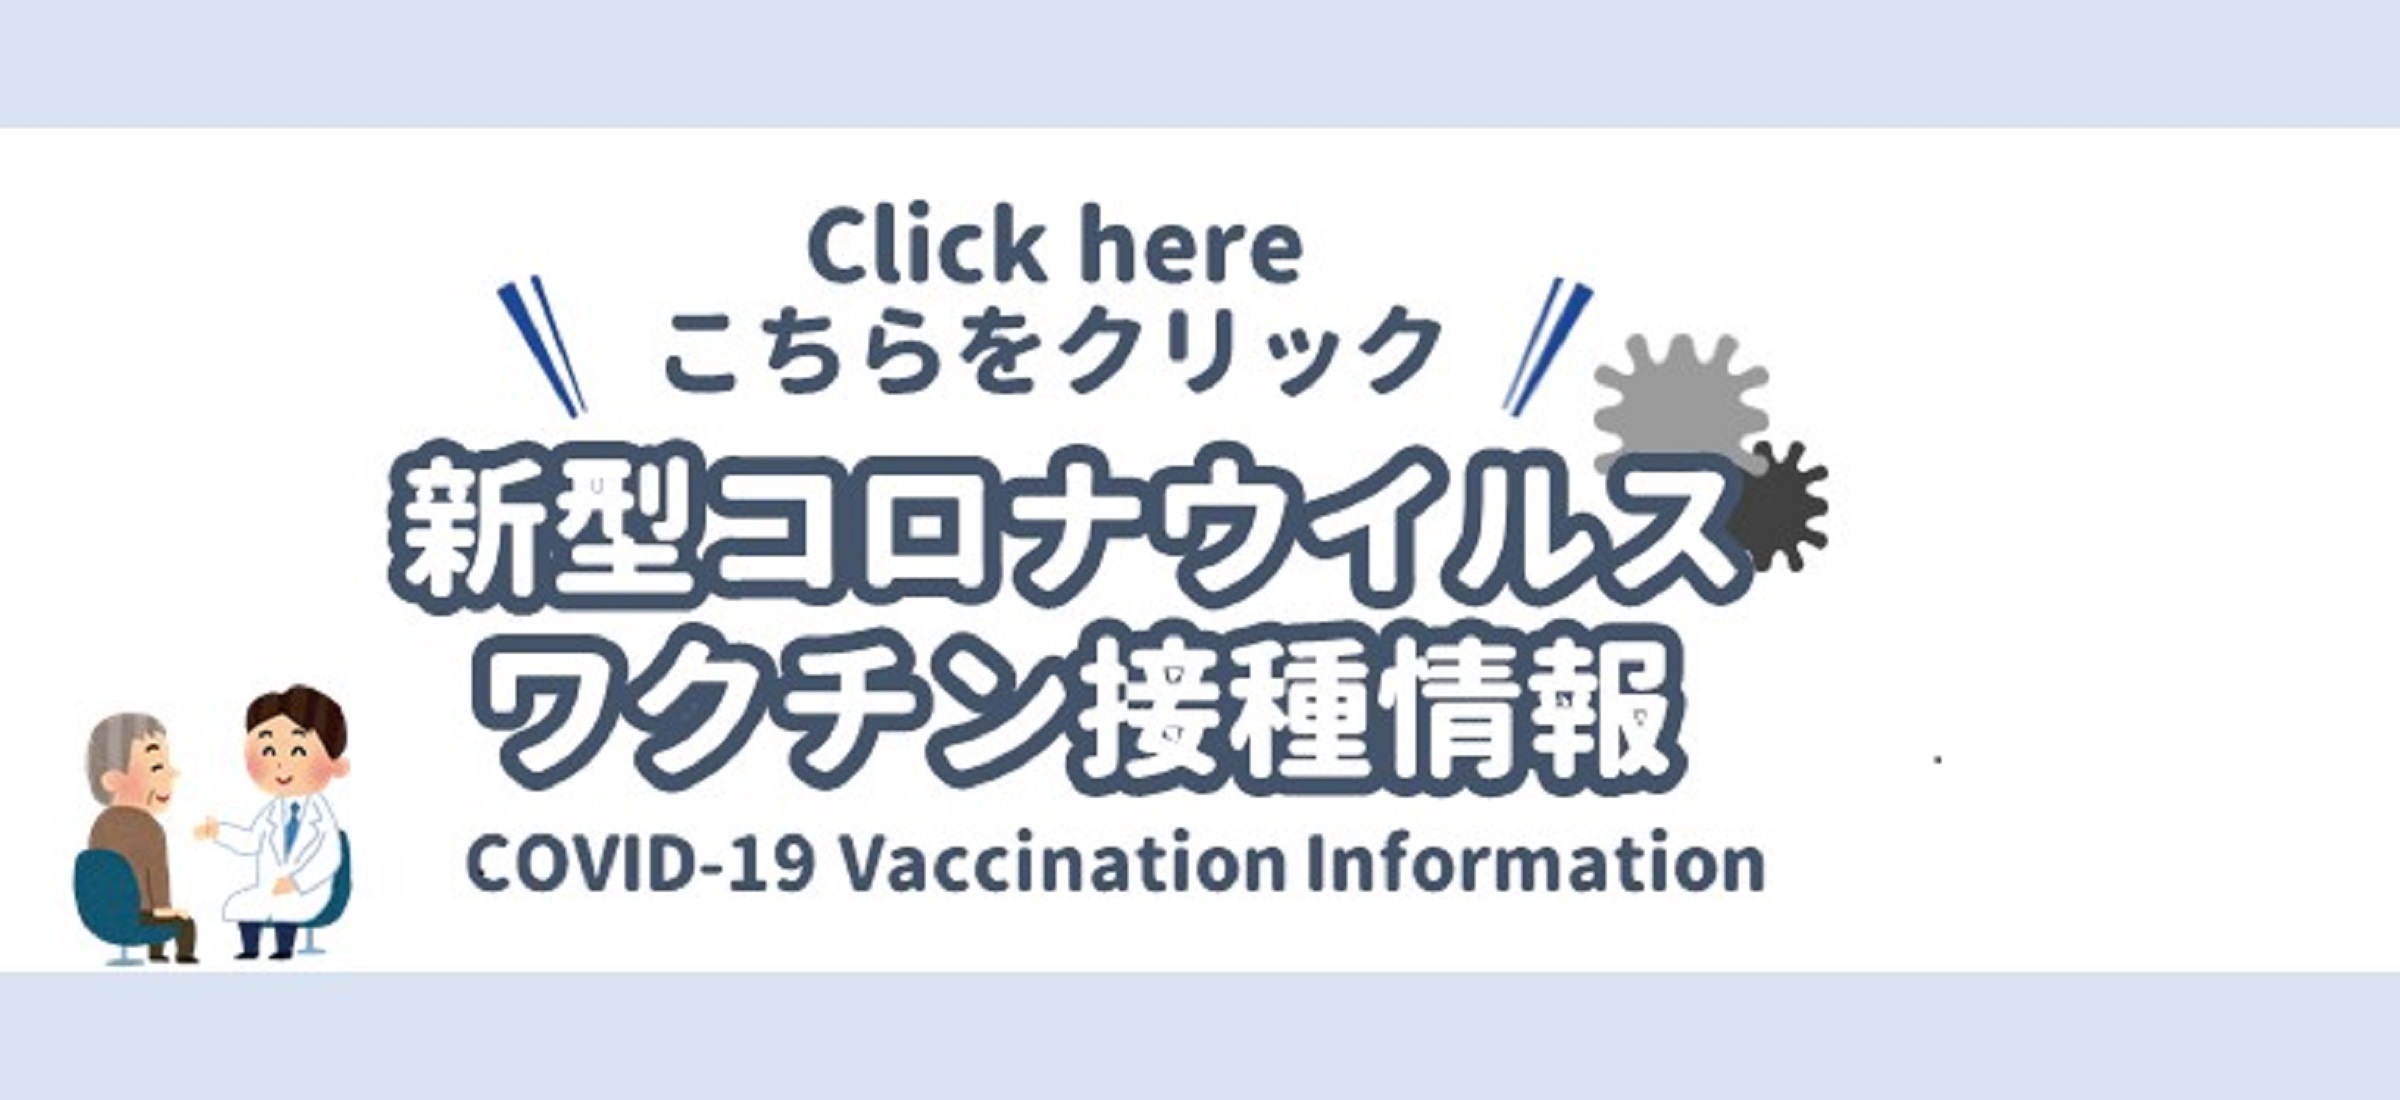 新型コロナウイルスワクチン接種情報について